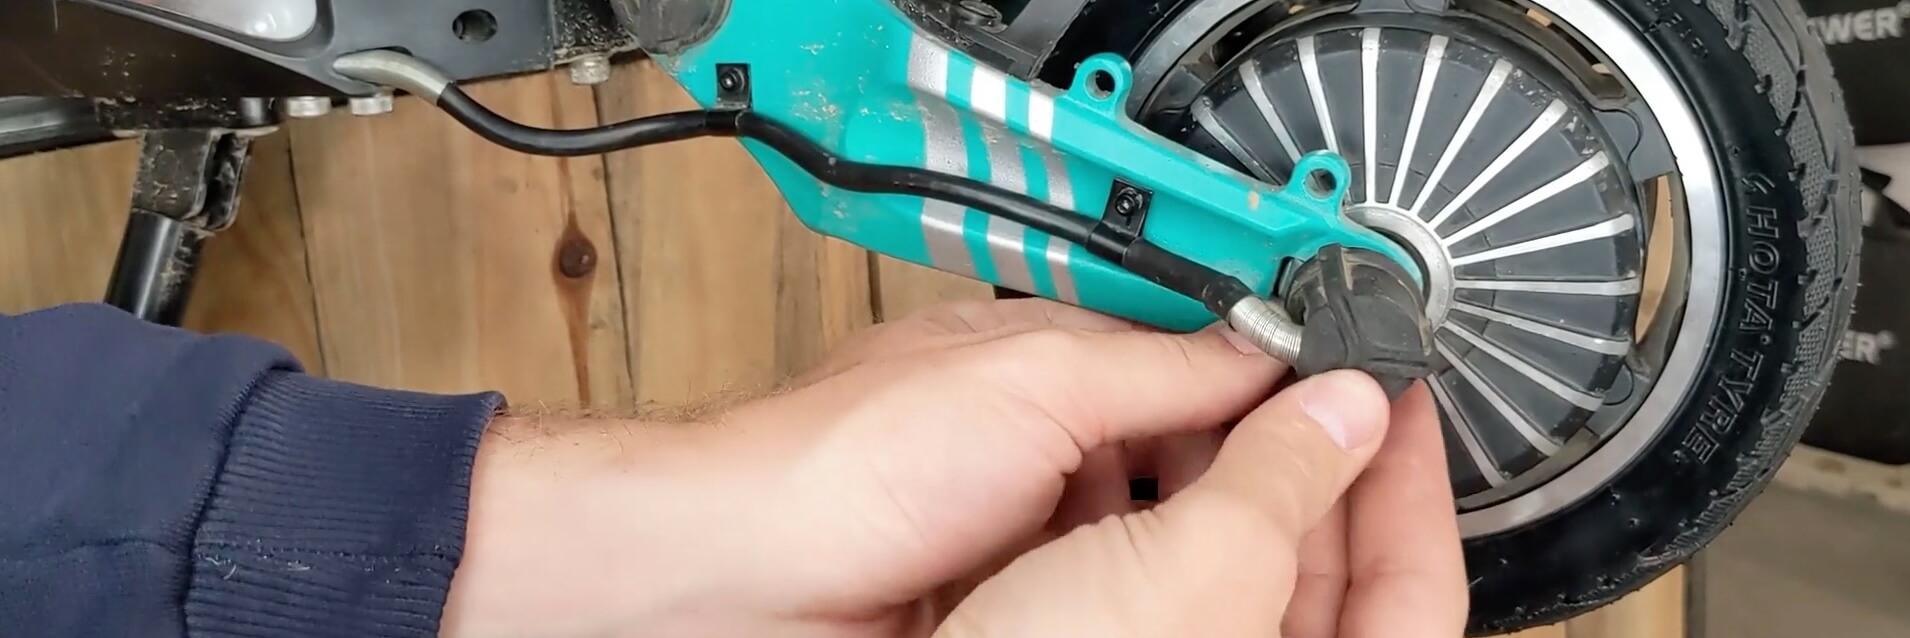 VSETT 9 - Reparation Roue Arriere - Installation de la roue arrière réparée sur la fourche